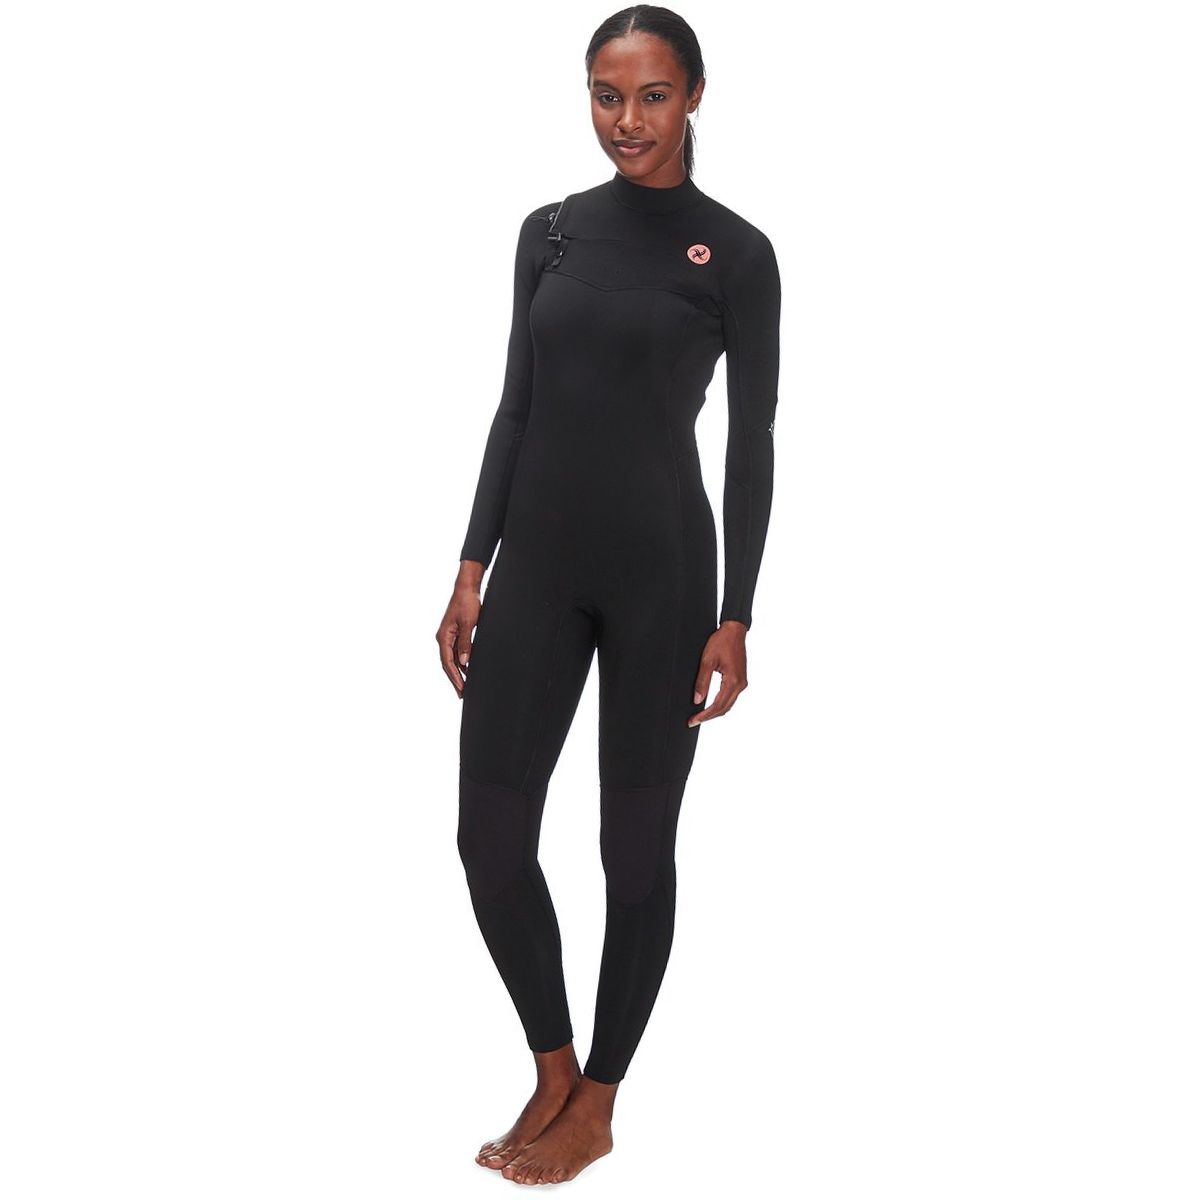 Sisstr Revolution 7 Seas 4/3mm Chest-Zip Long-Sleeve Full Wetsuit - Women's